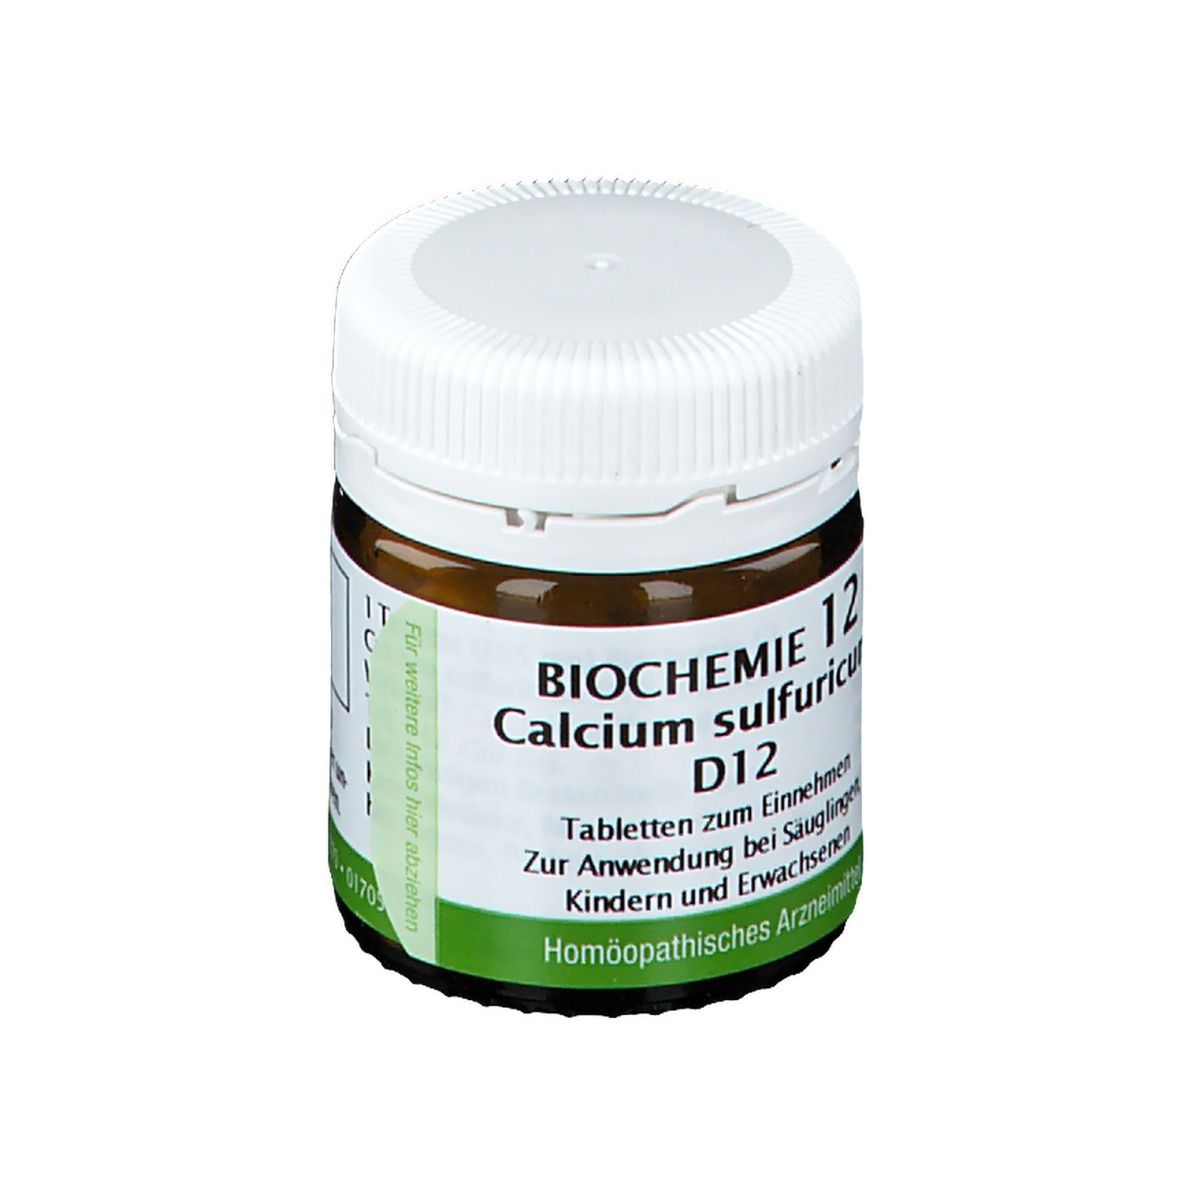 Bombastus Biochemie 12 Calcium Sulfuricum D12